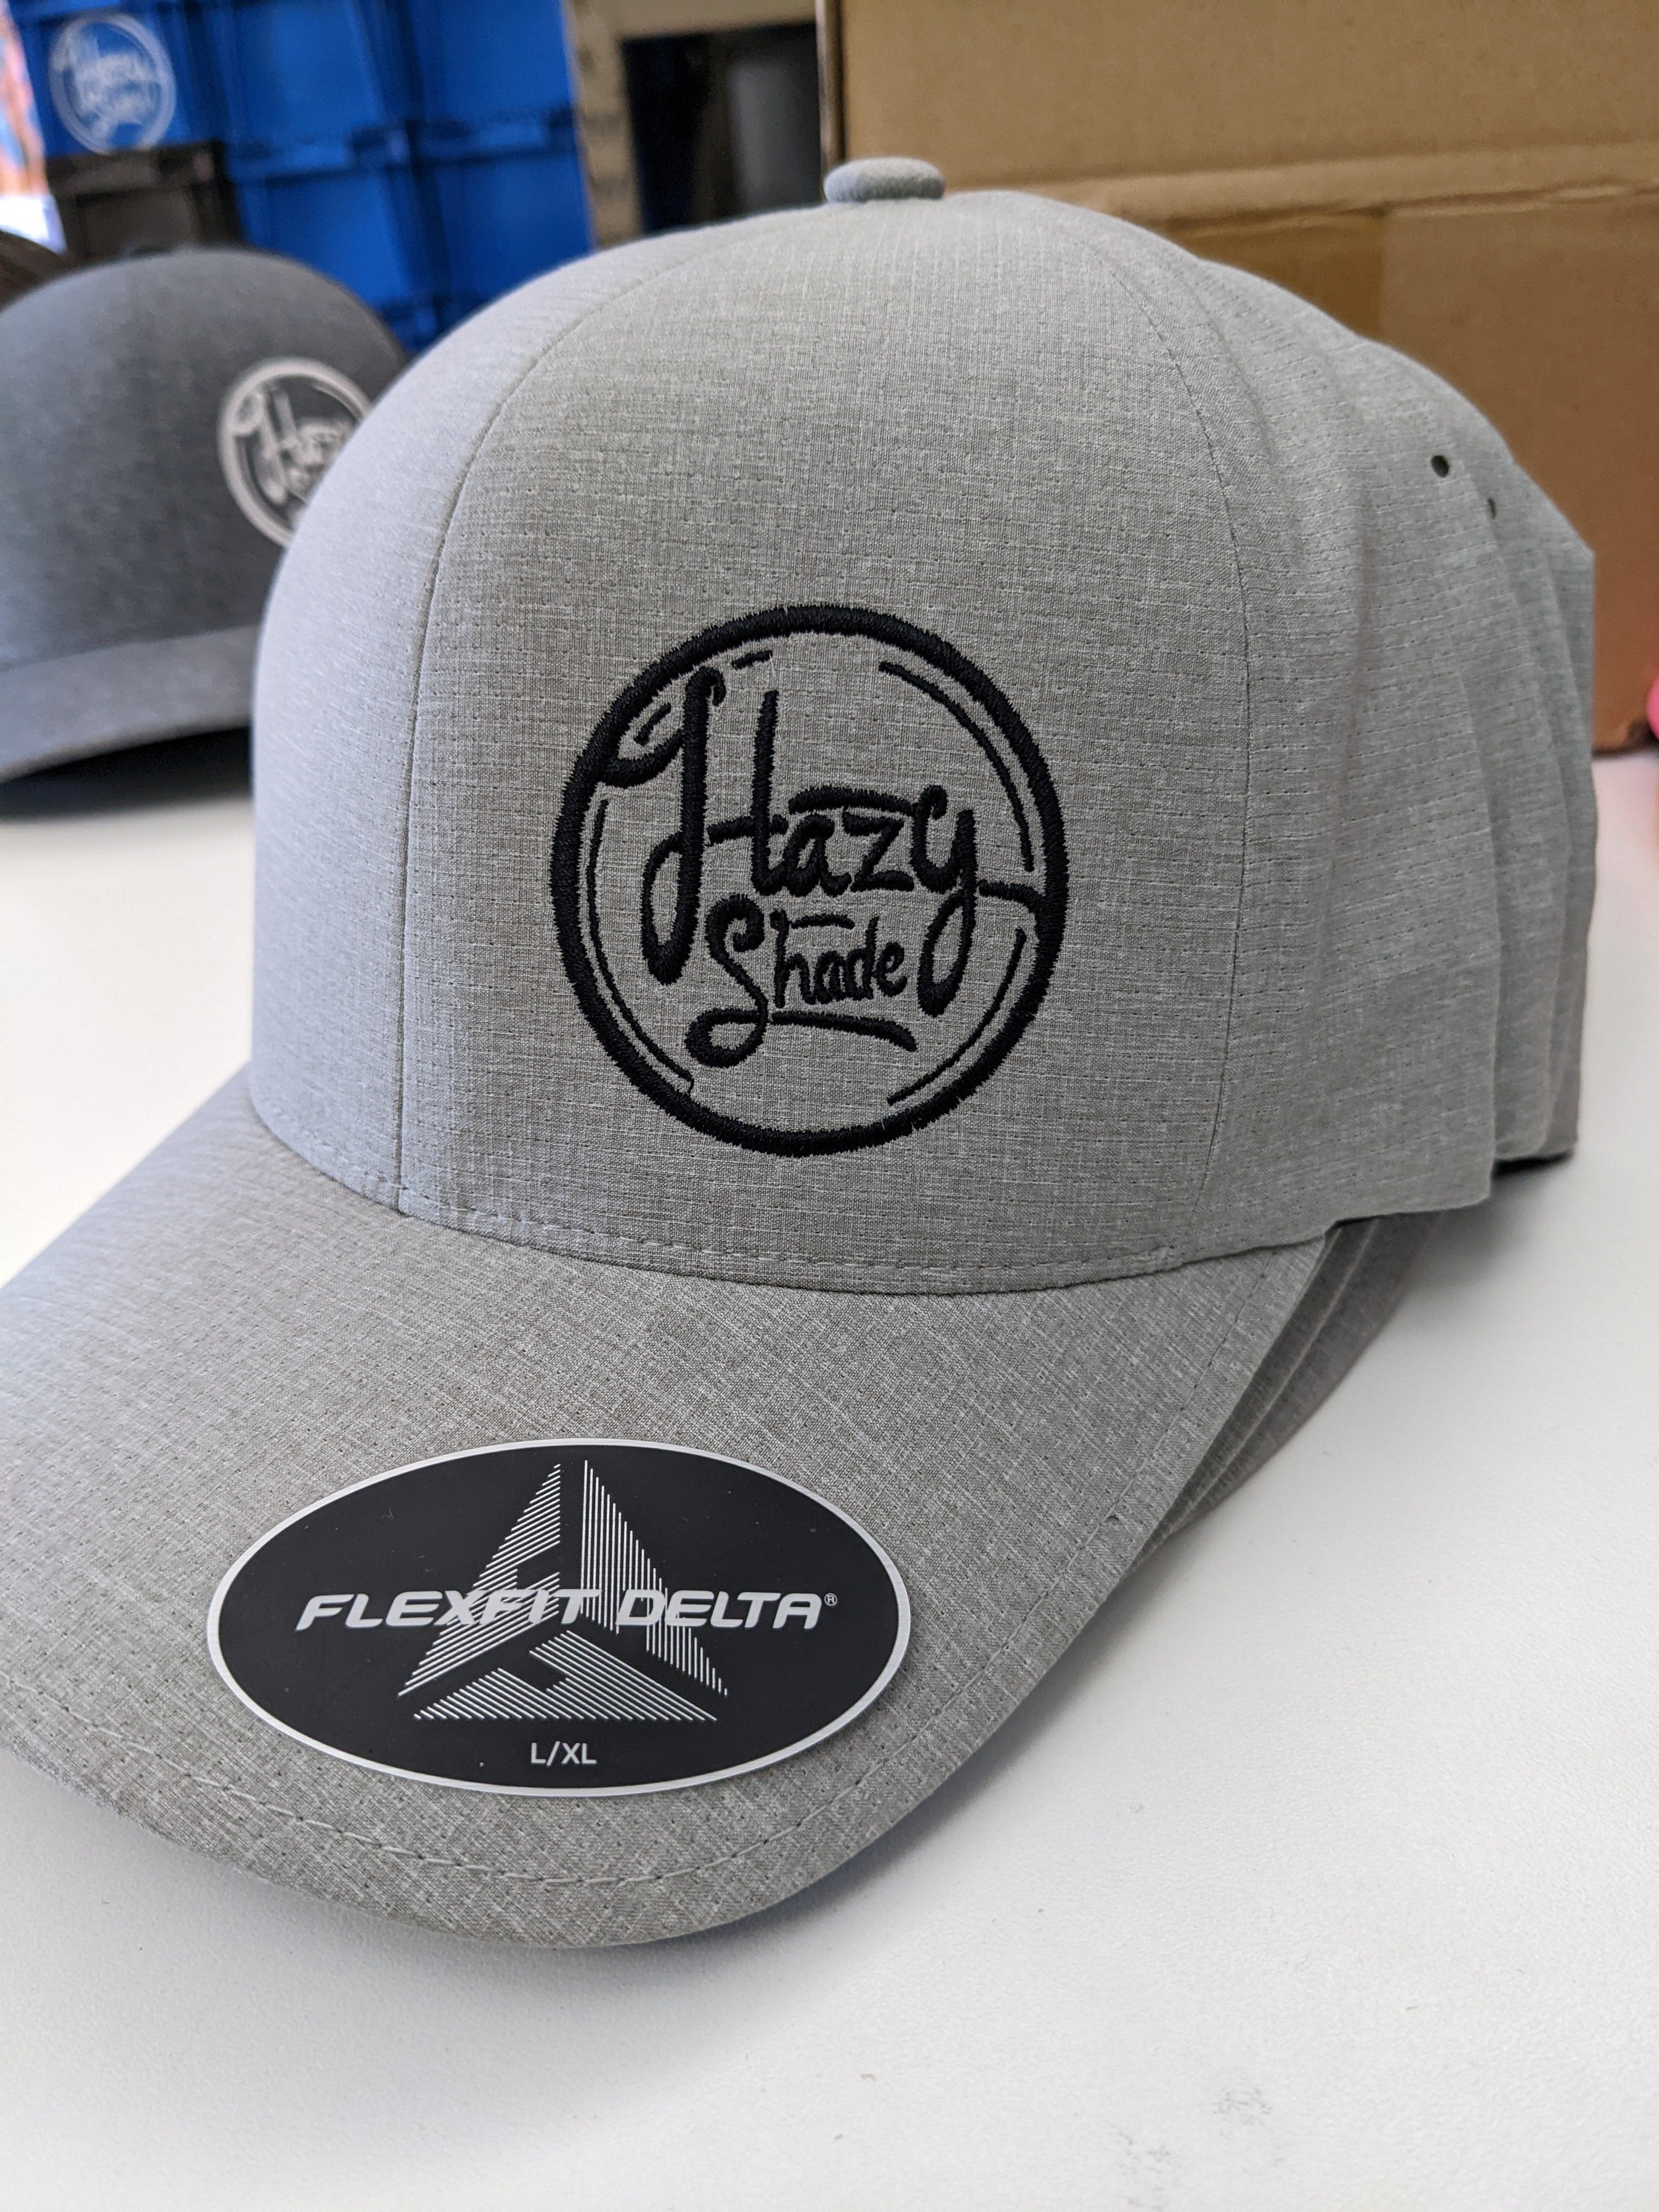 Hazy Shade Flexfit Delta L/XL Hat Black Round Offset